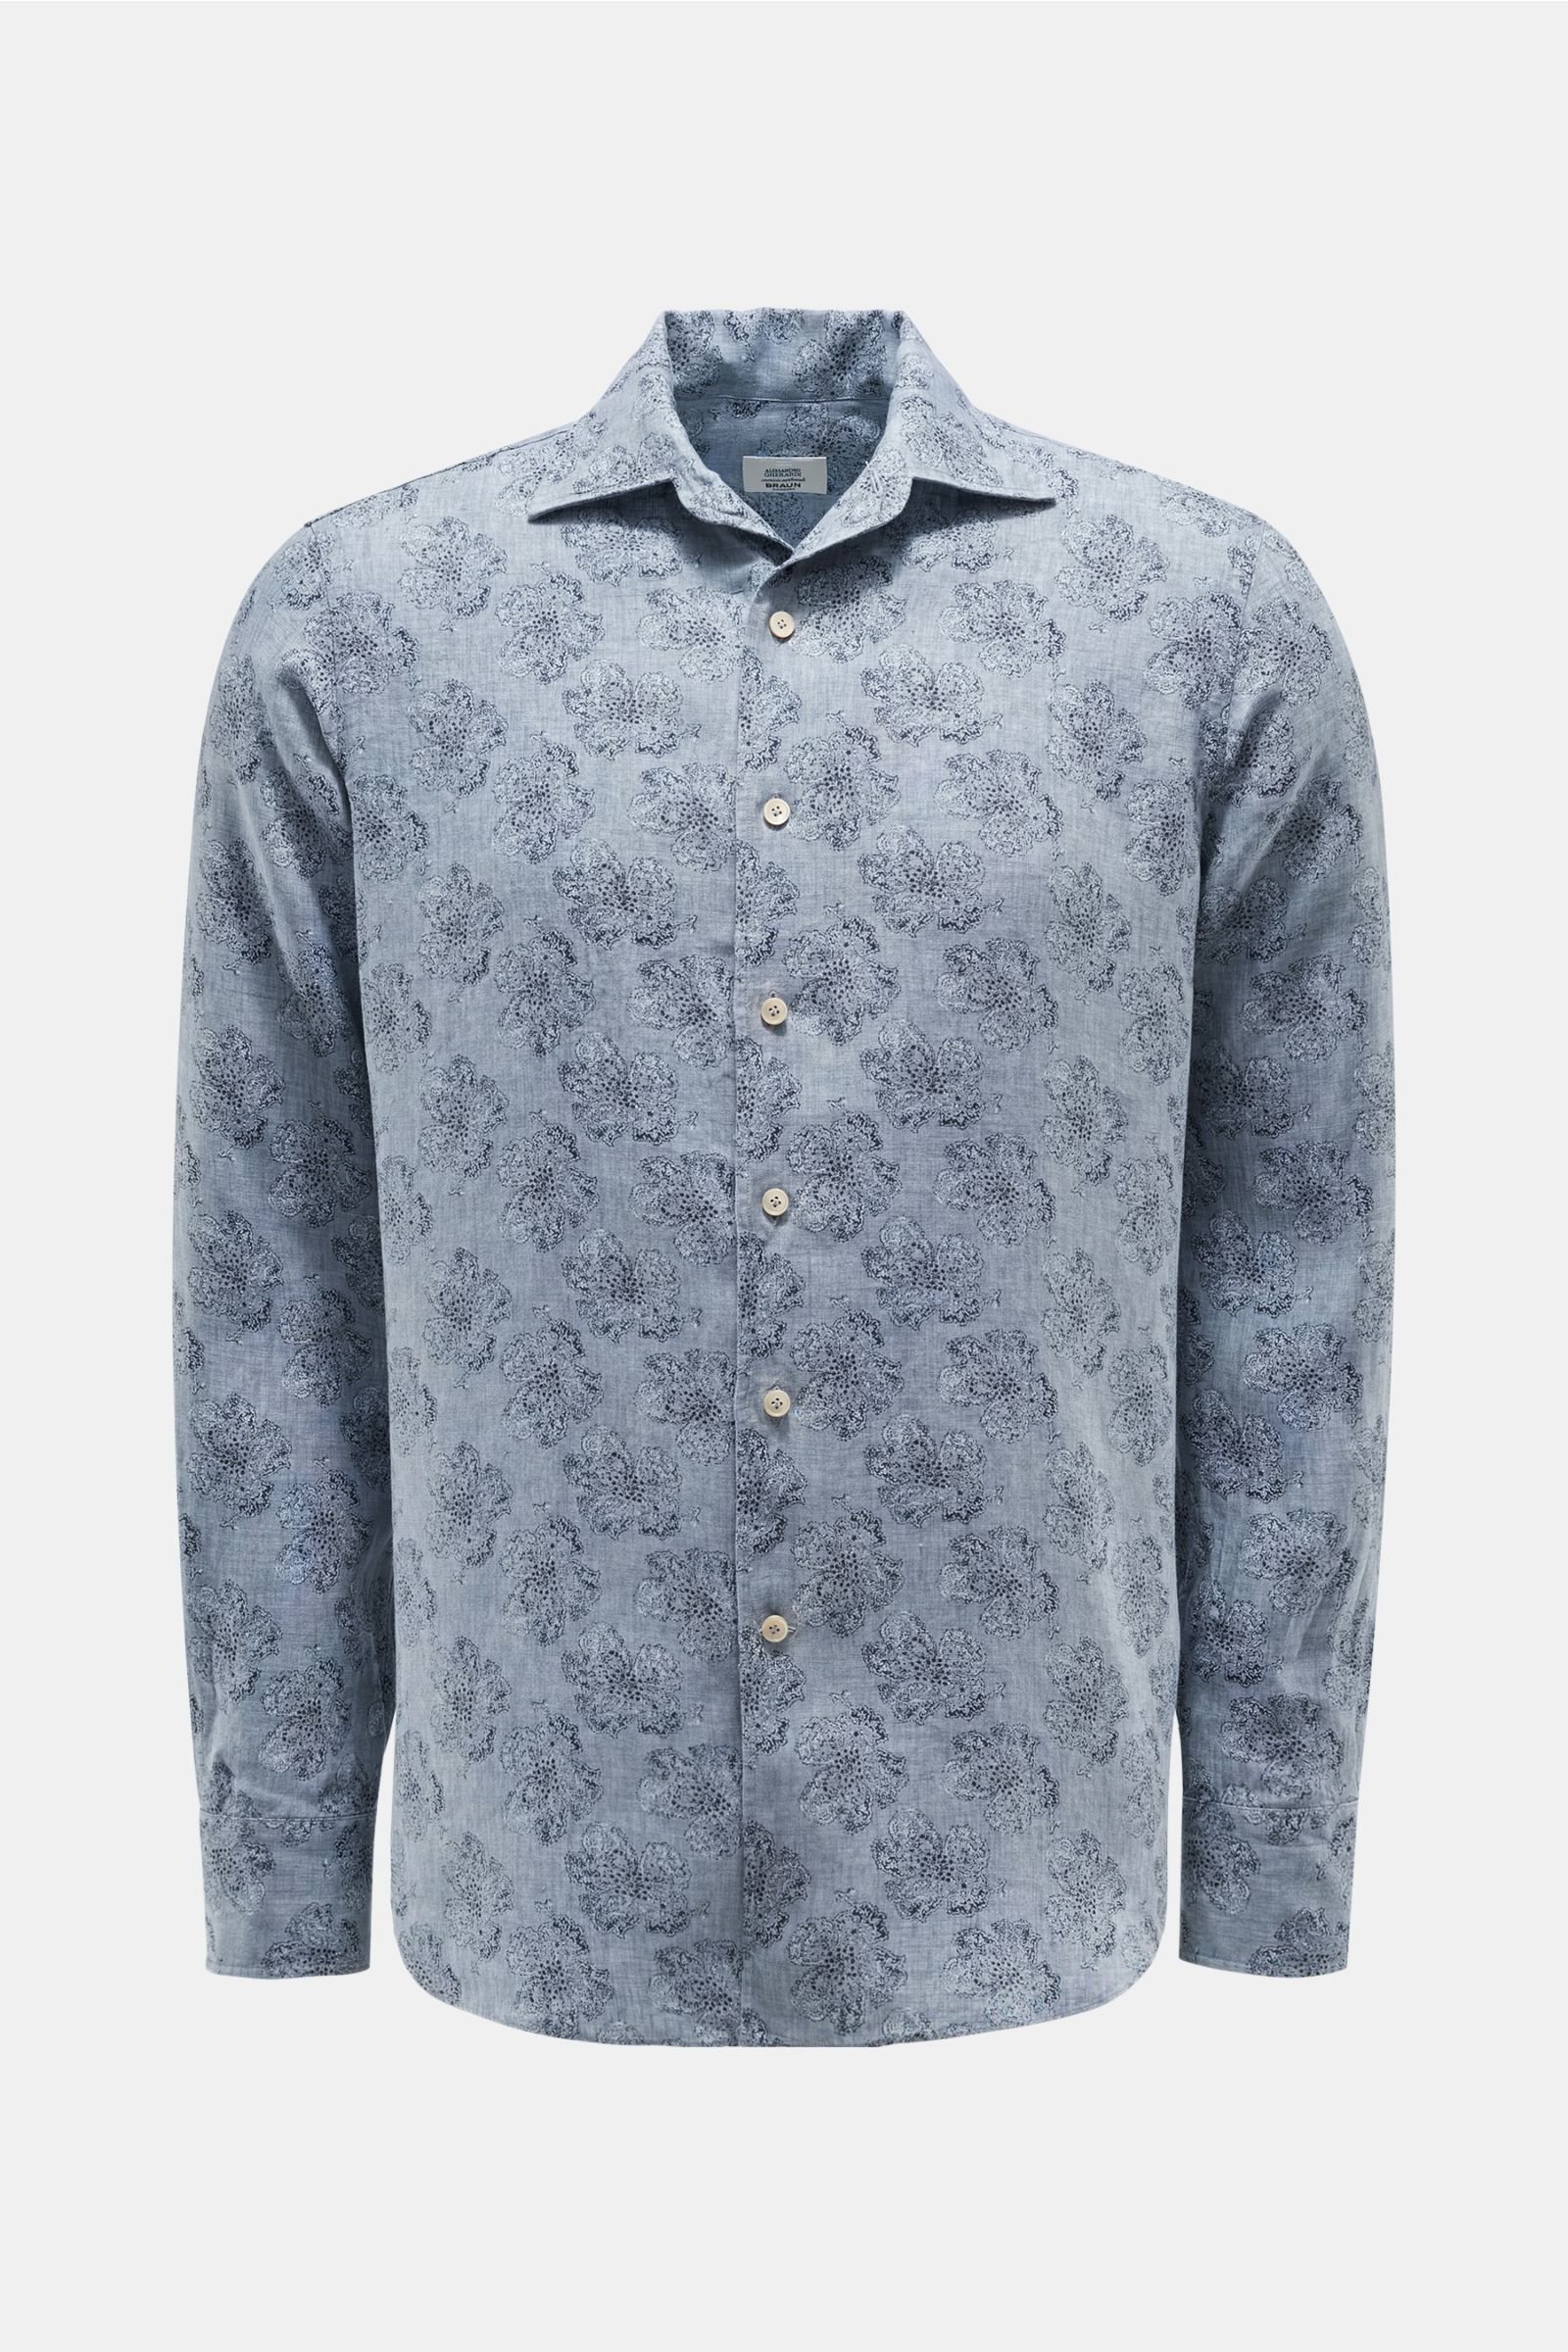 Linen shirt shark collar grey-blue patterned